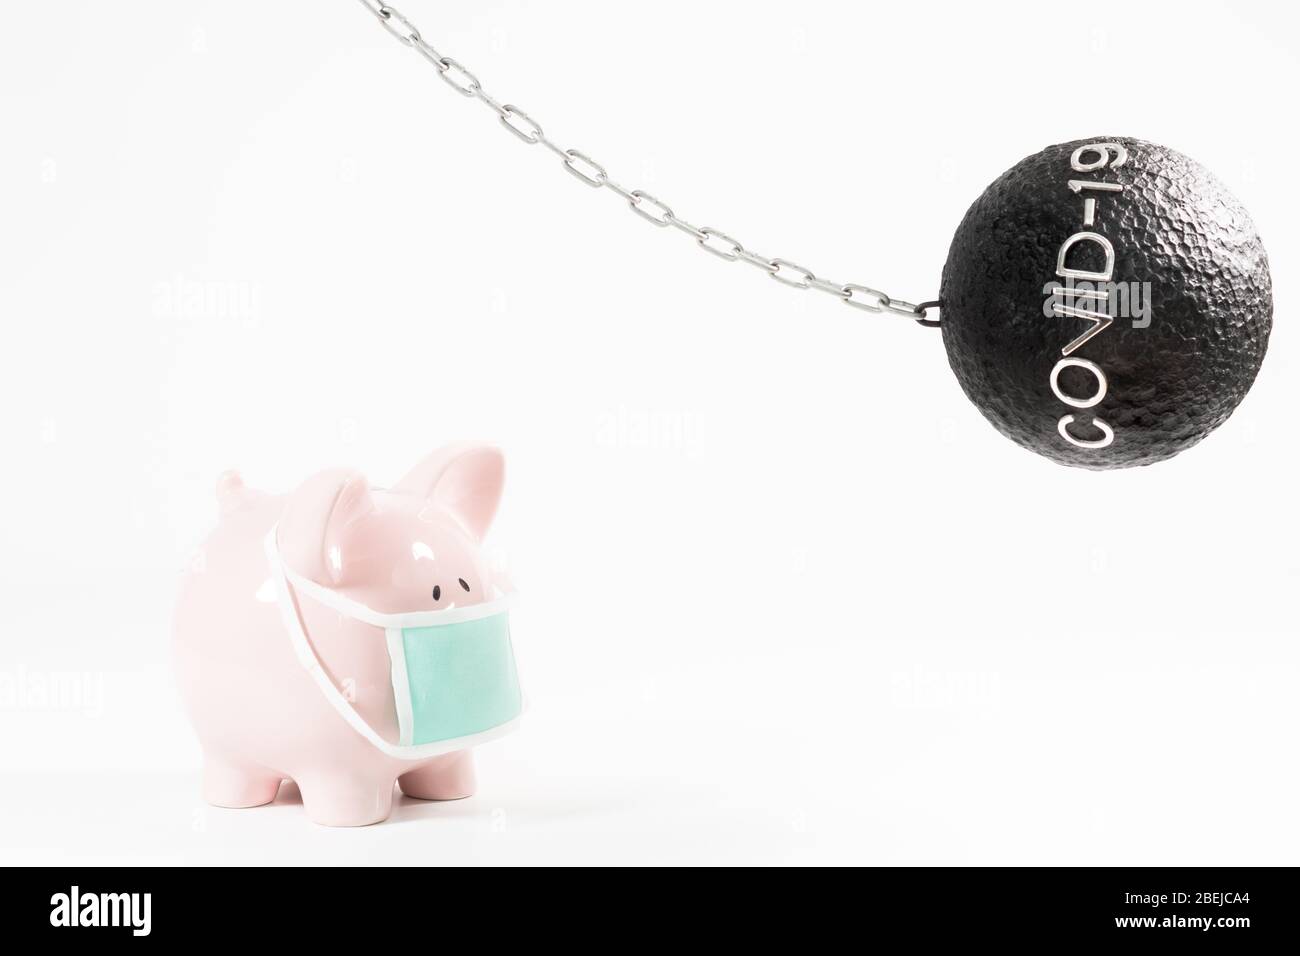 Image conceptuelle pour la gestion des risques avec une boule de naufrage et une banque de porc illustrant l'impact financier de COVID-19 sur l'épargne et la santé. Banque D'Images